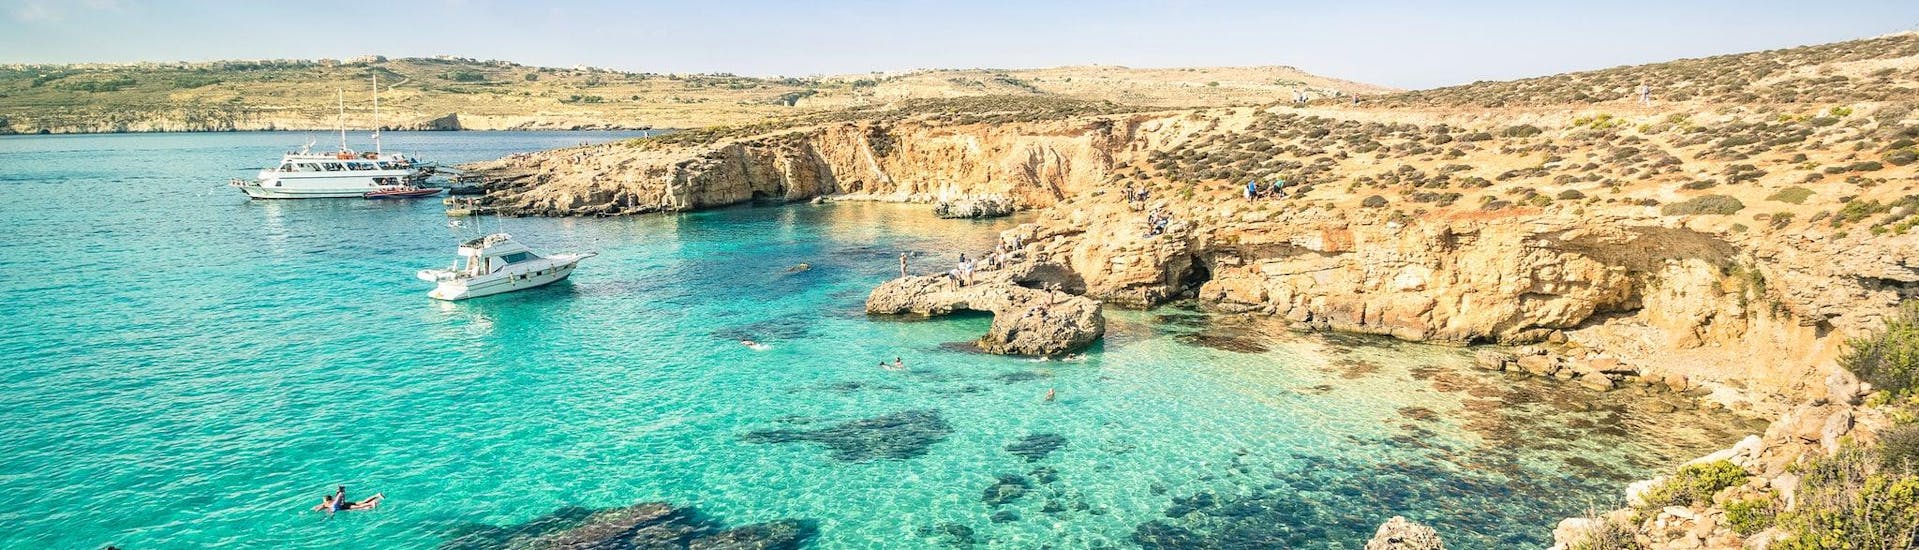 Vista della famosa Laguna Blu, che è una destinazione popolare per le gite in barca da St George's Bay, Malta.